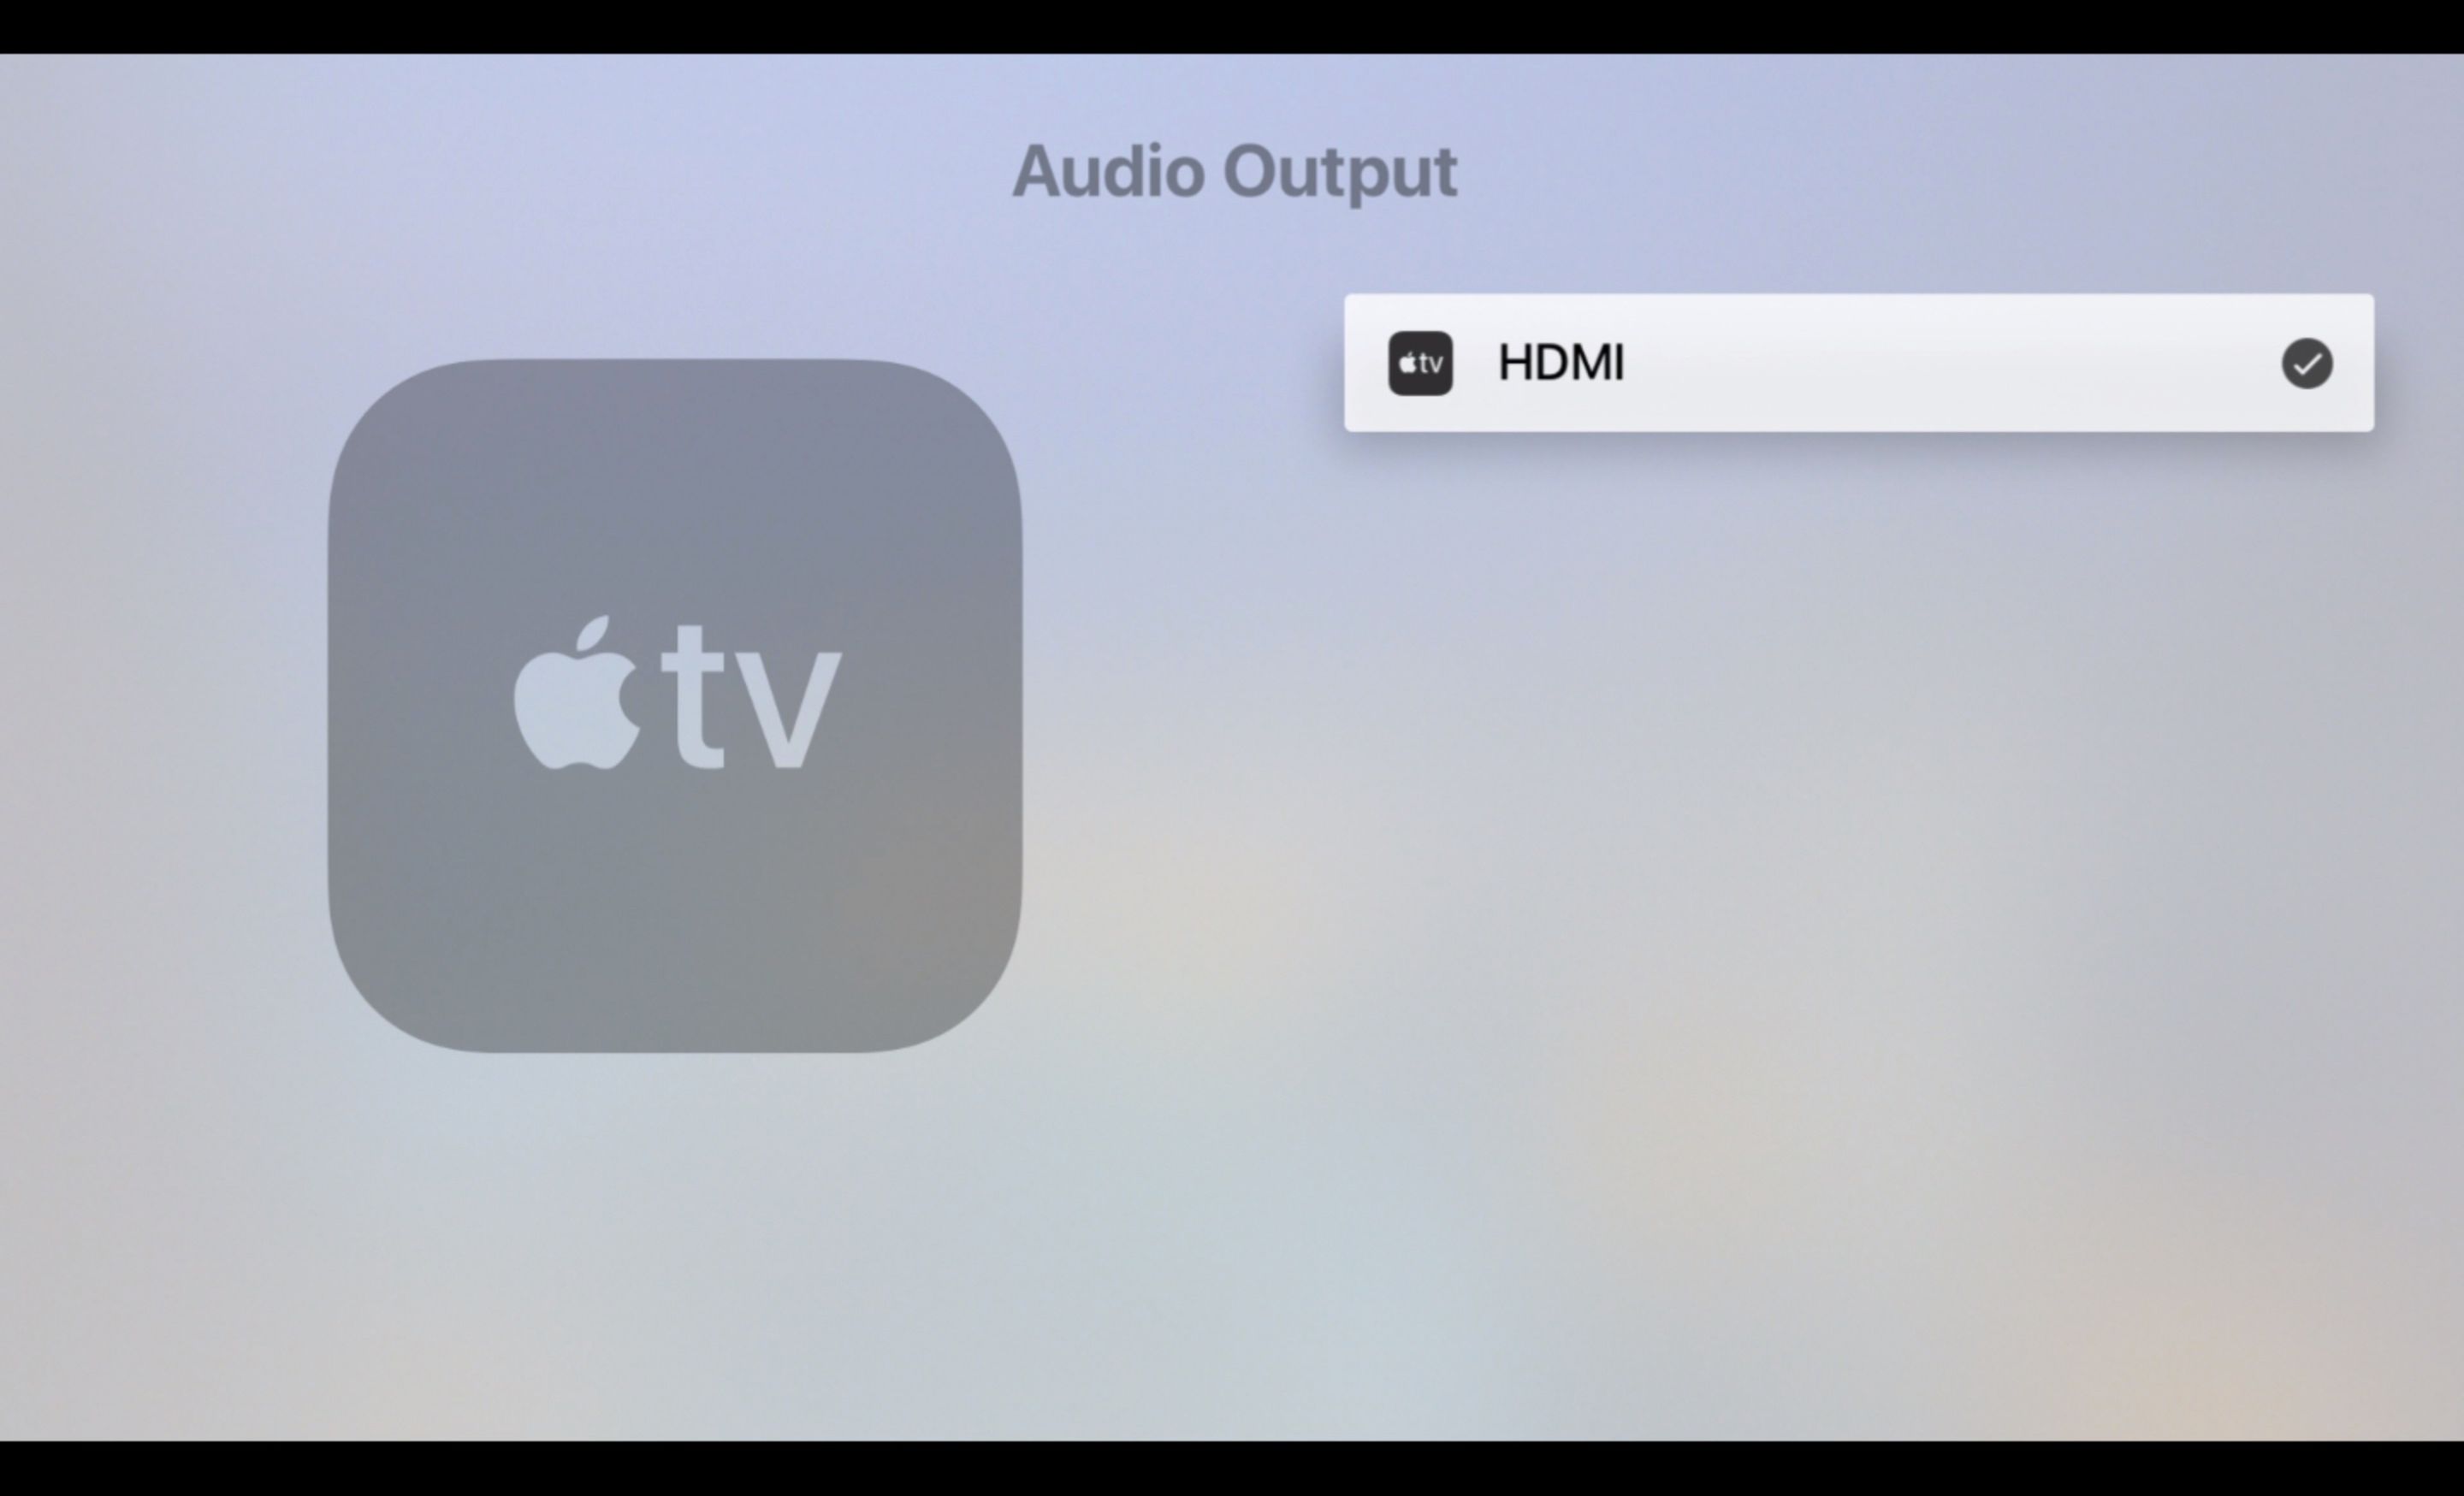 Obrazovka zvukového výstupu na Apple TV, nastavená na HDMI